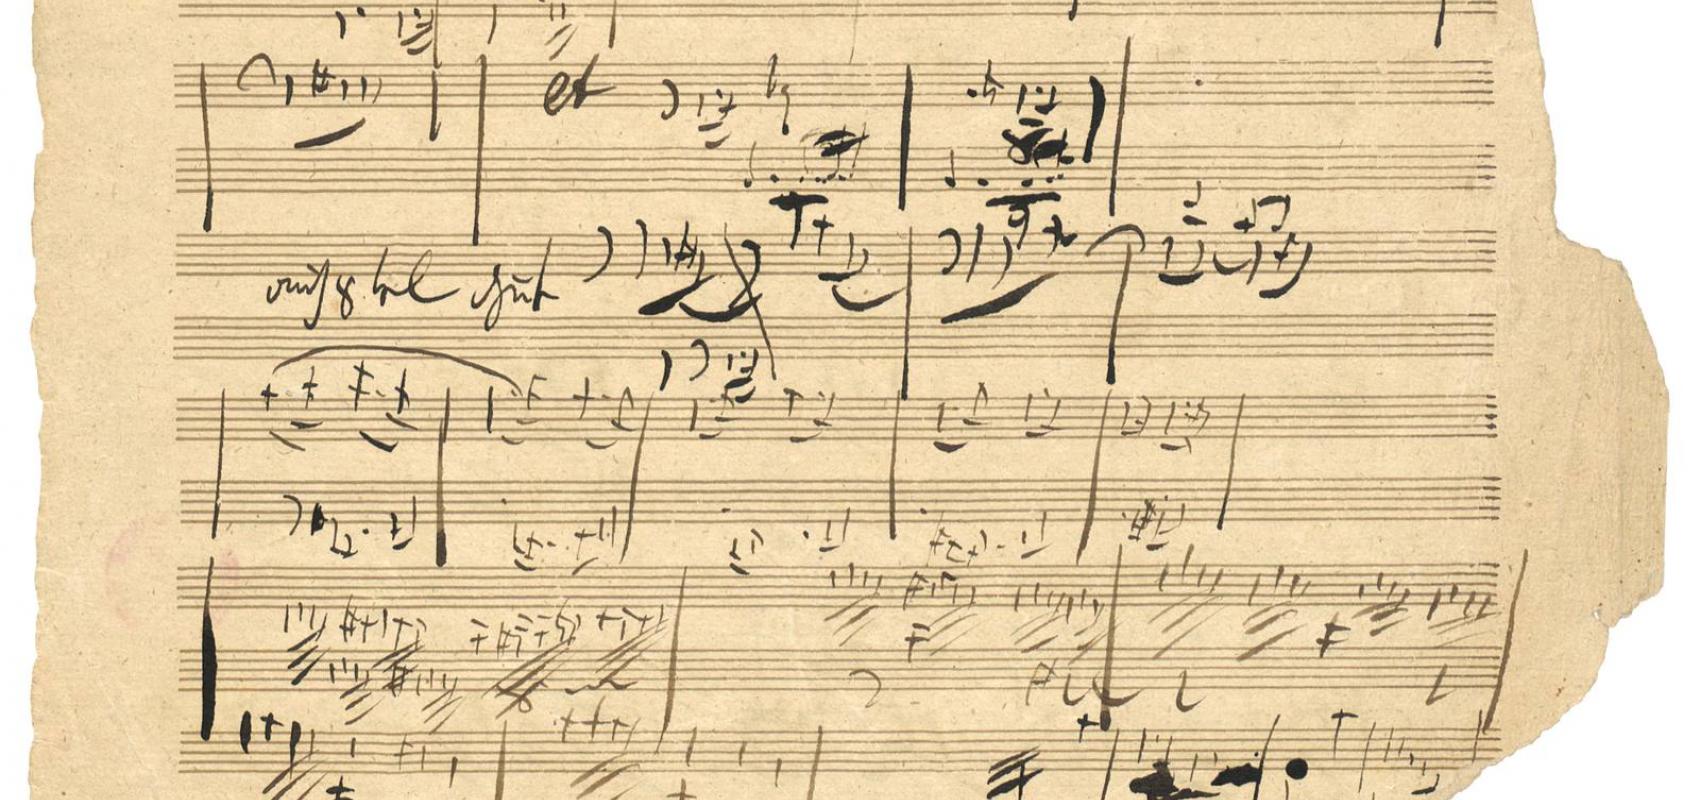 Beethoven. Manuscrit autographe, Symphonie no 9 op. 125 : esquisses pour le 1er mouvement. -  - BnF, département de la Musique